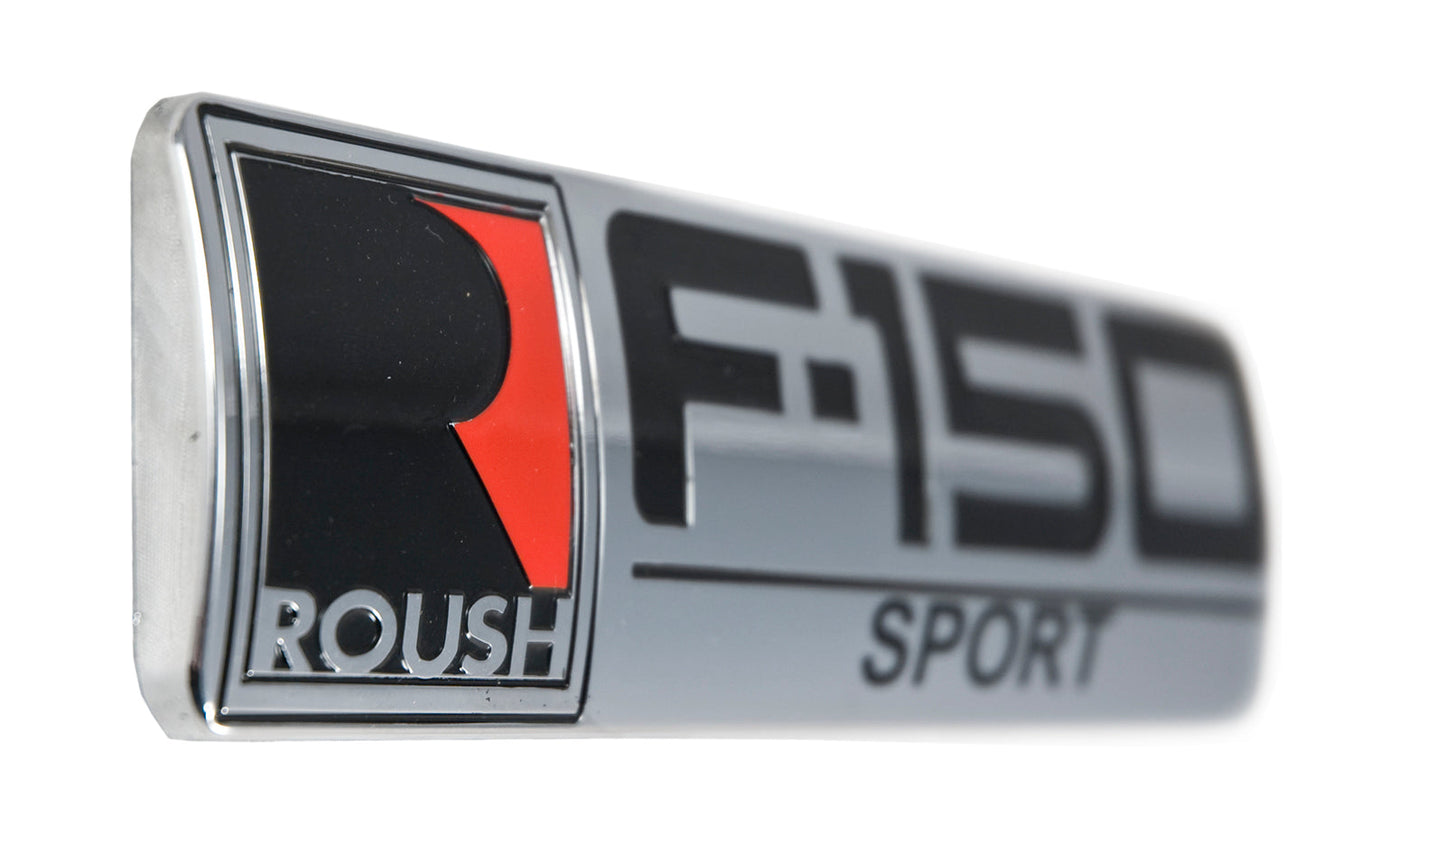 Roush F-150 Sport Ford Truck Fender & Rear Emblems in Chrome Black & Red - Pair